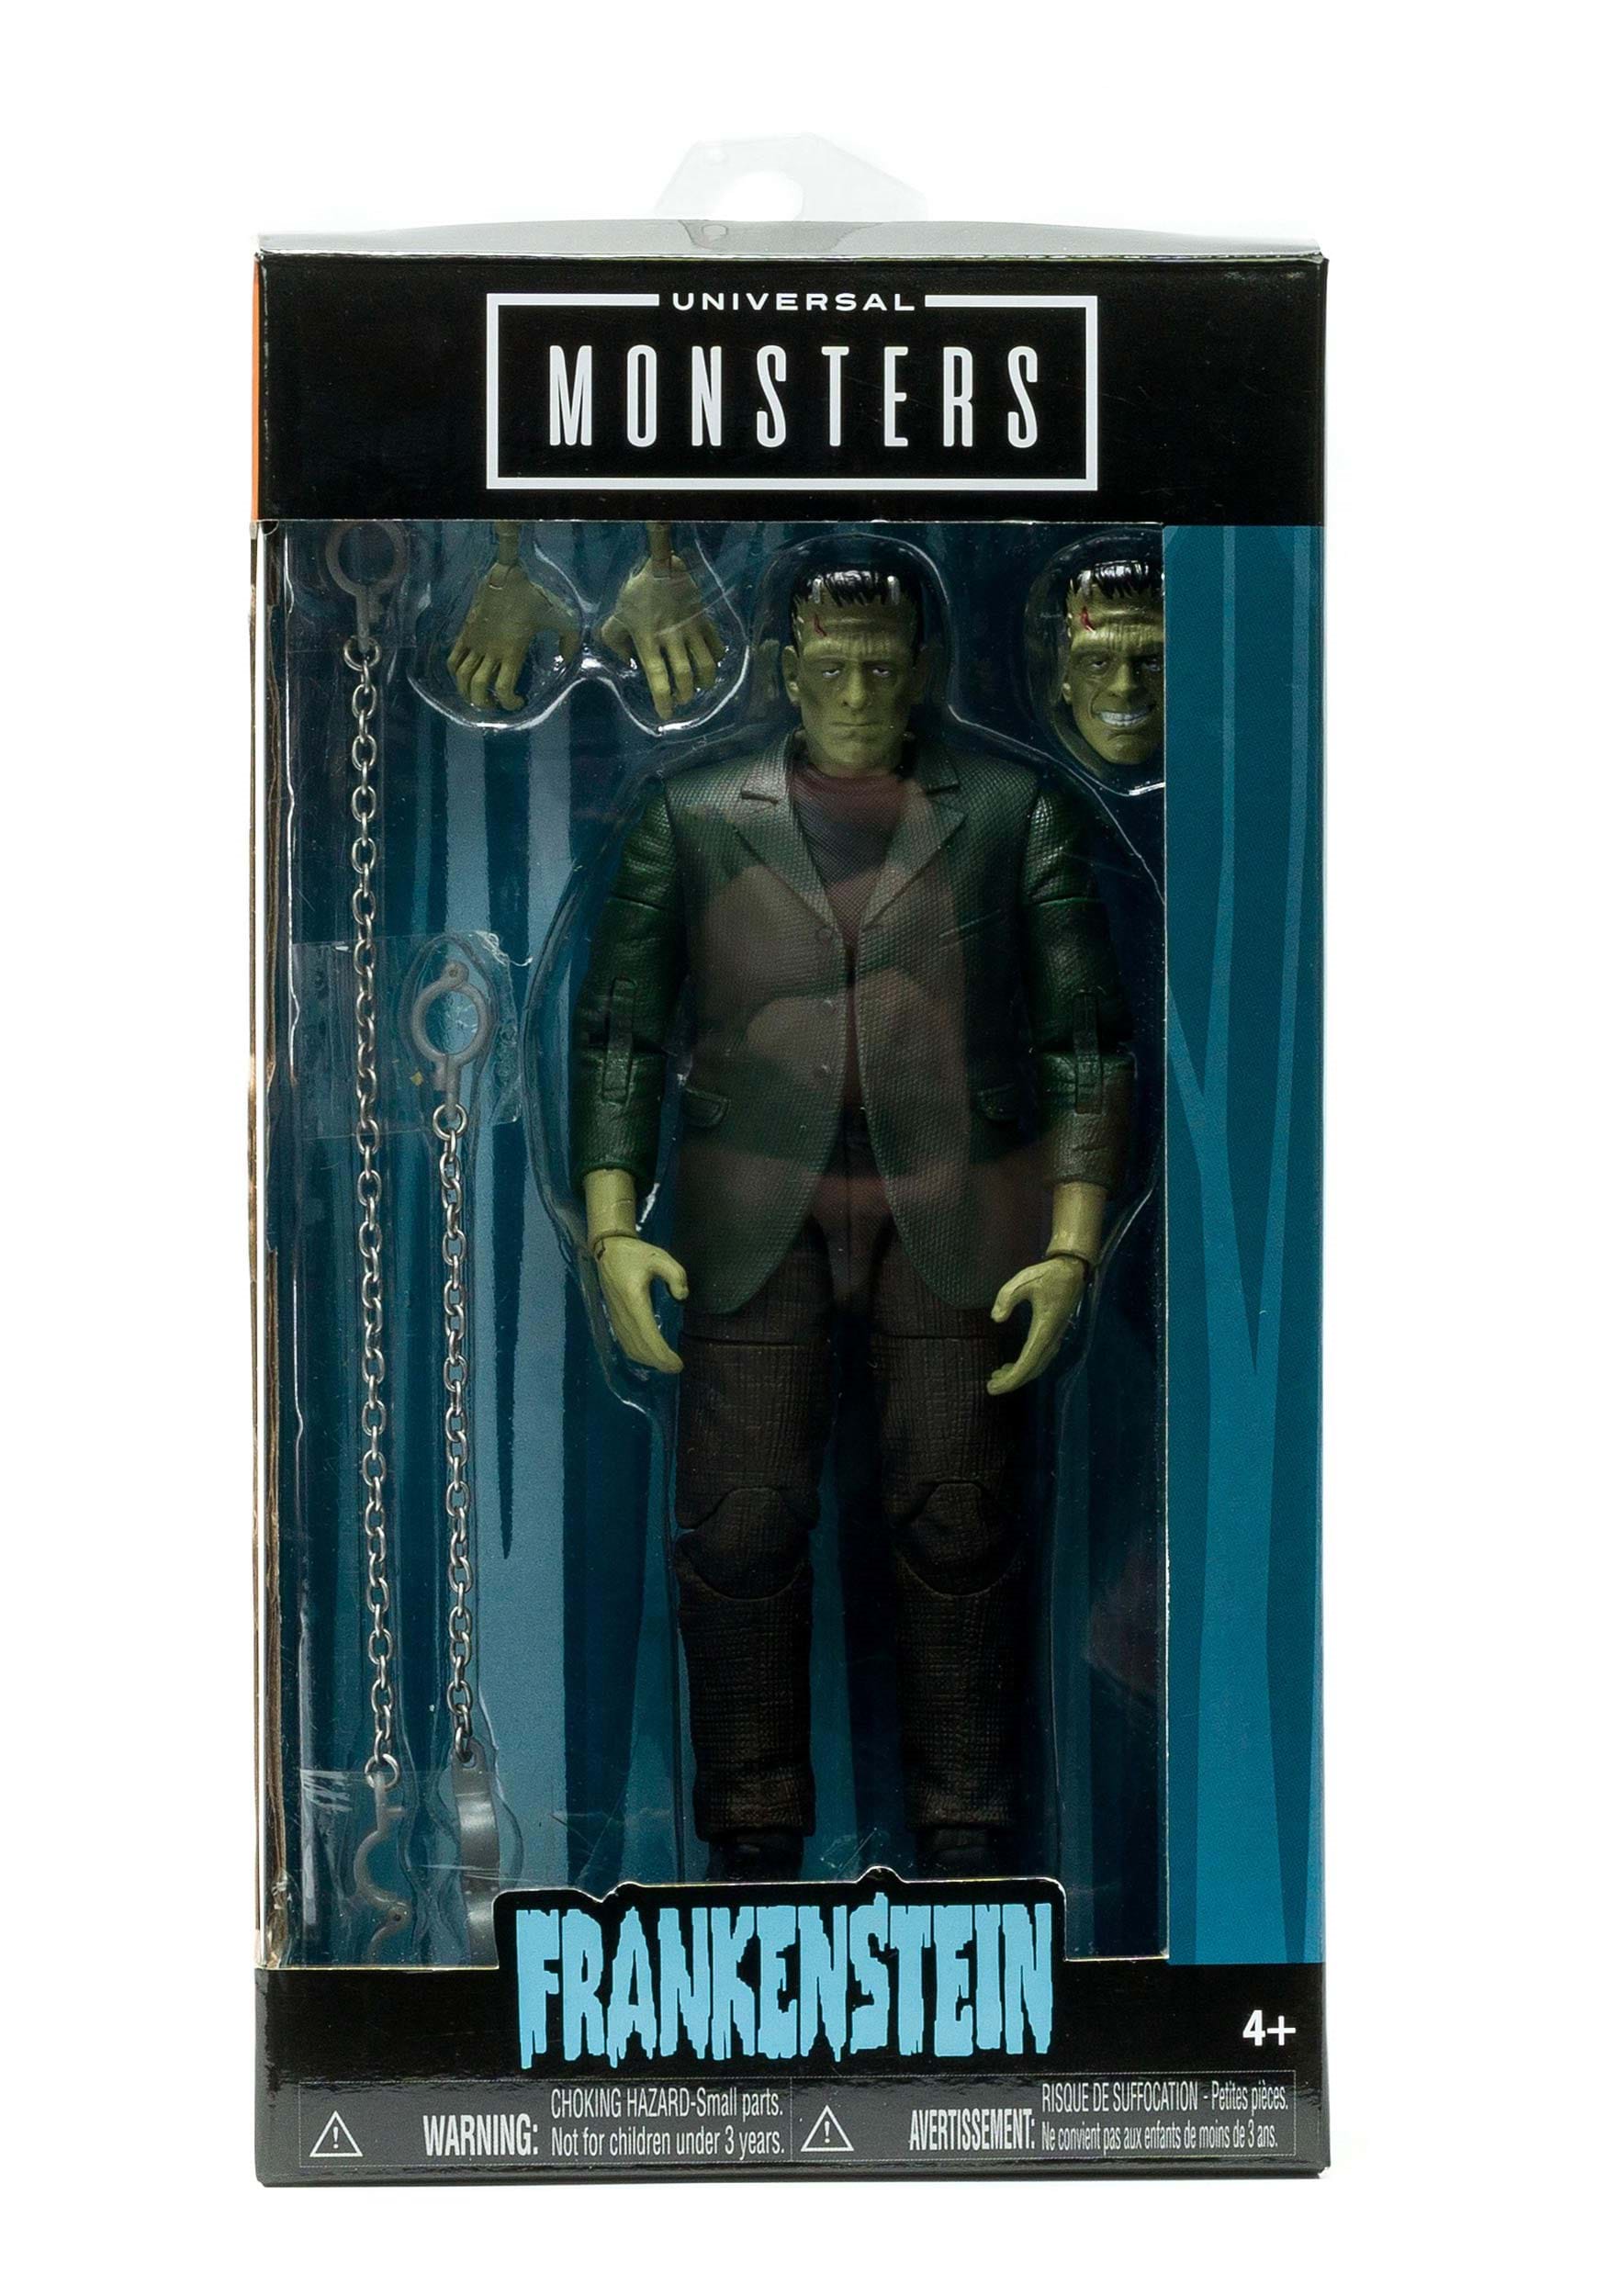 6.75 Inch Universal Monsters Frankenstein Action Figure